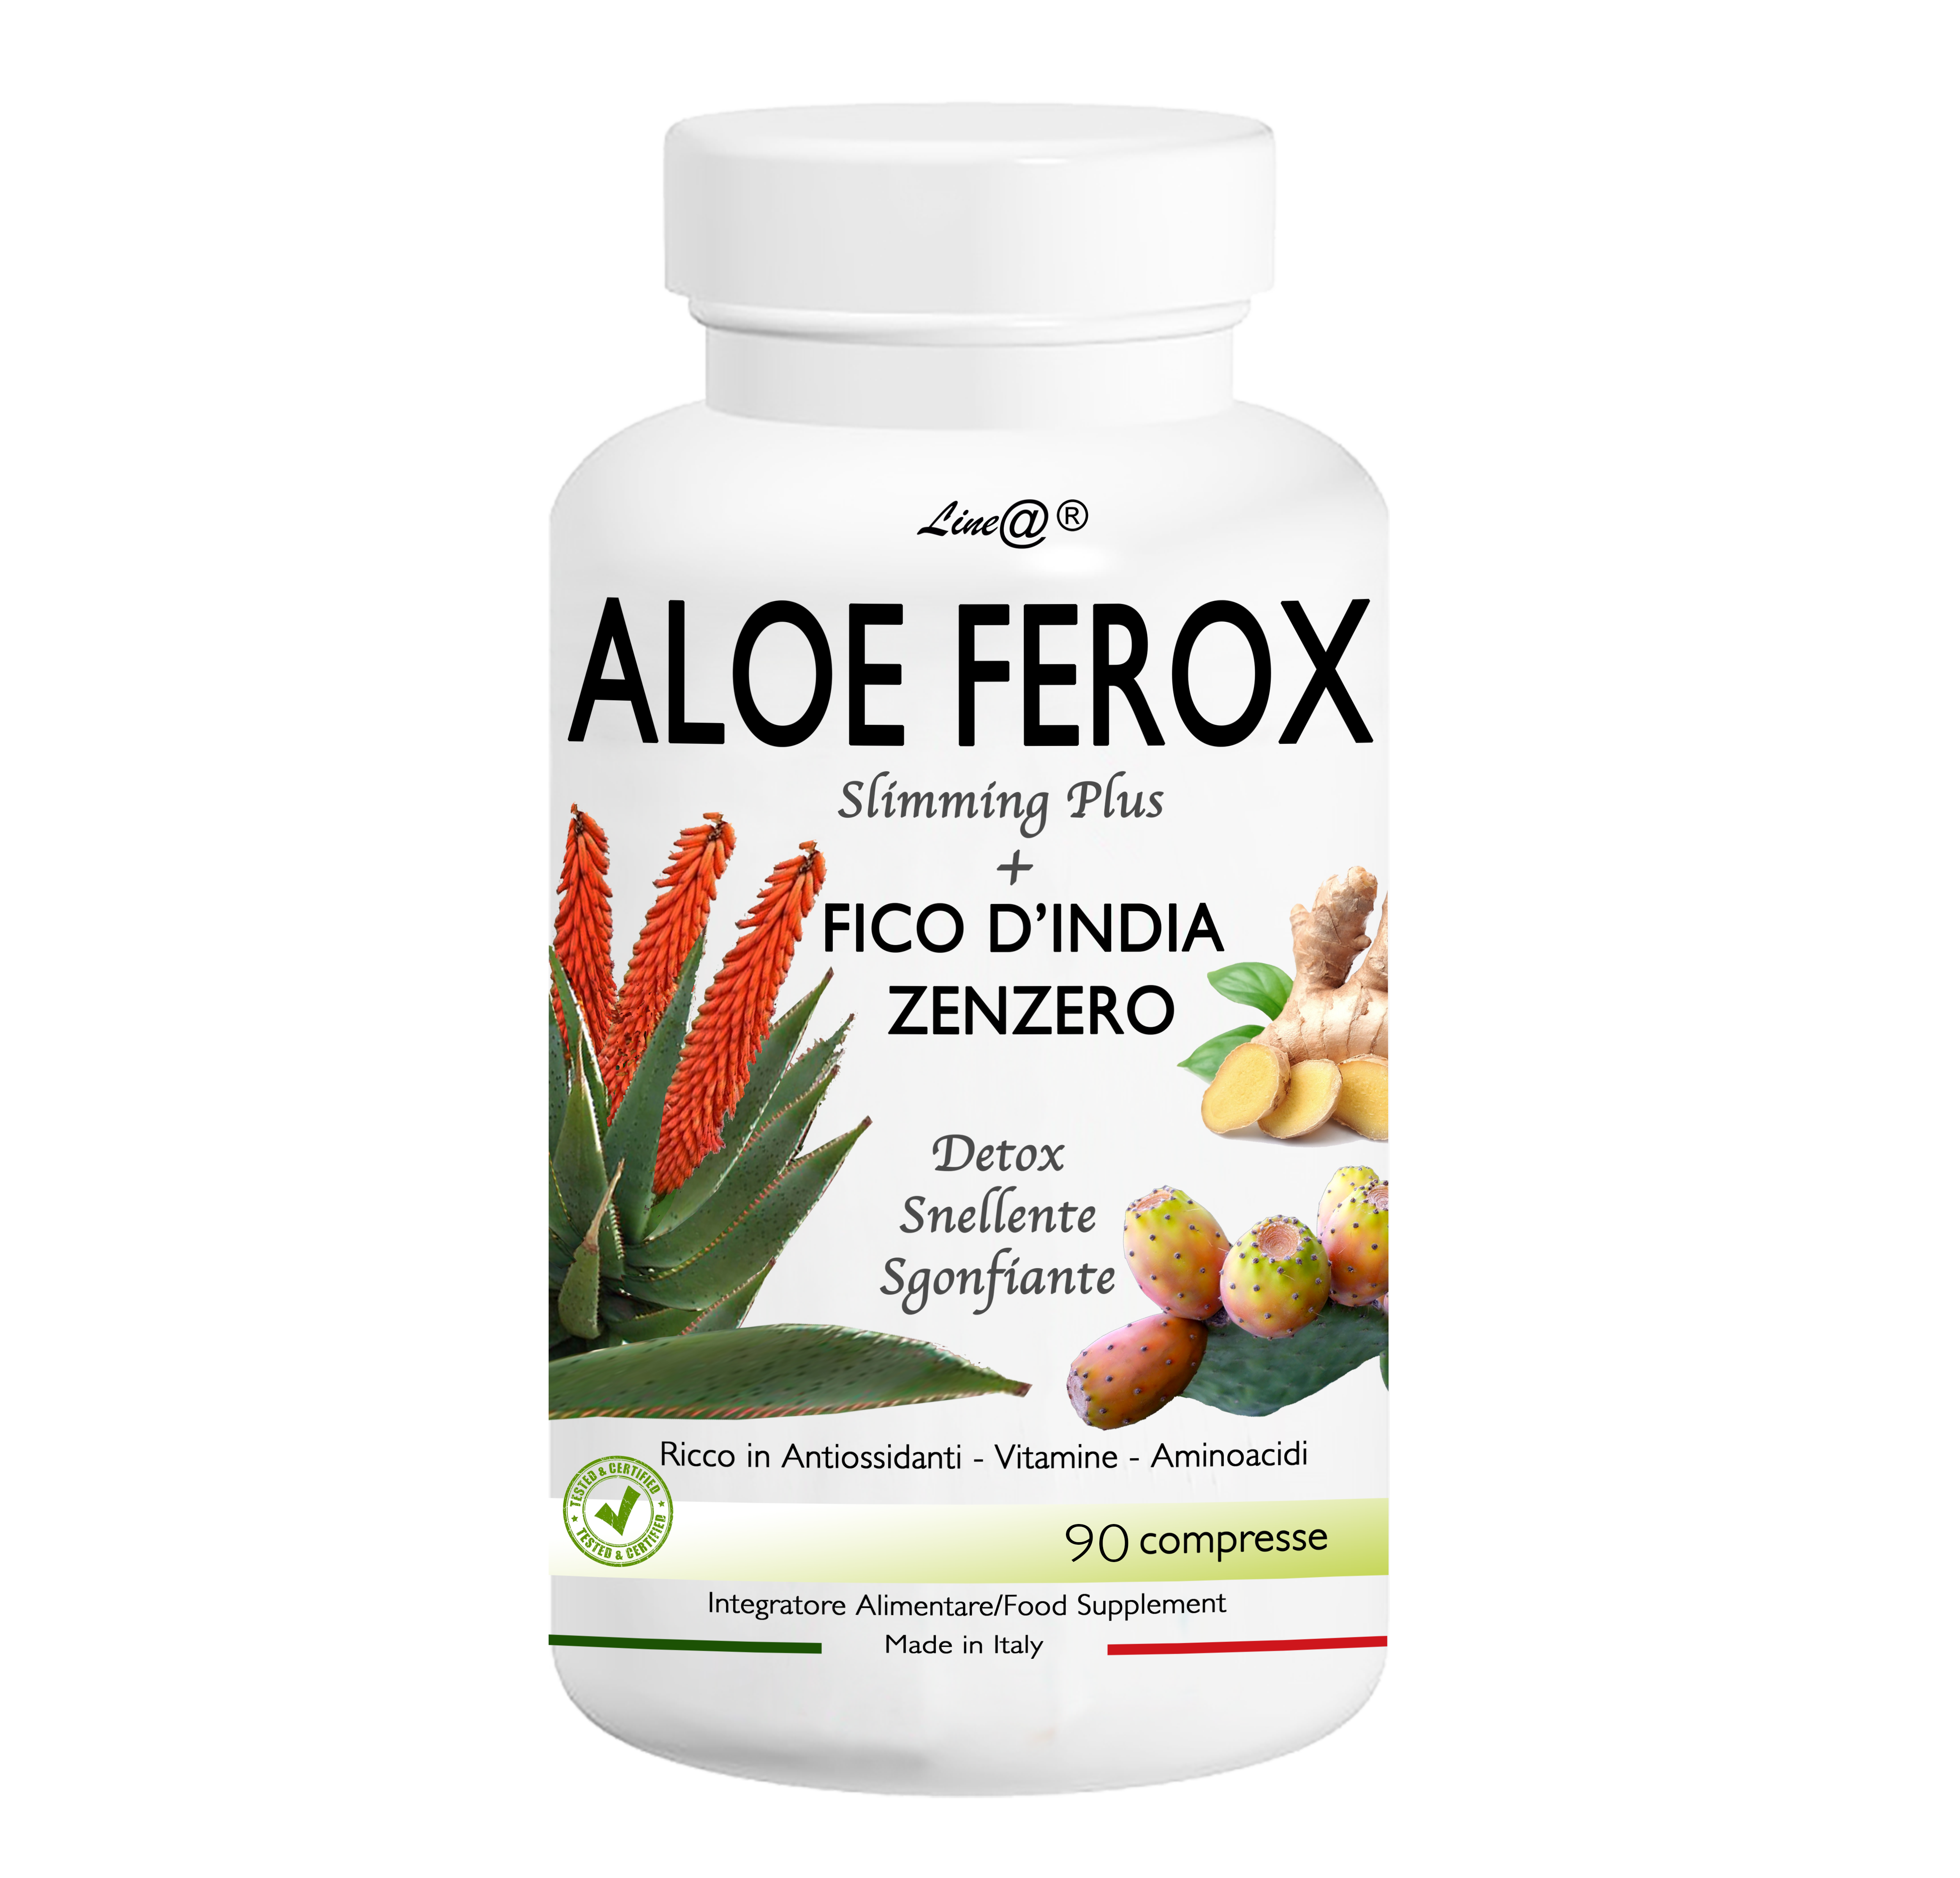 Afla cum poti slabi 7 kilograme in mod natural cu Aloe Ferox!